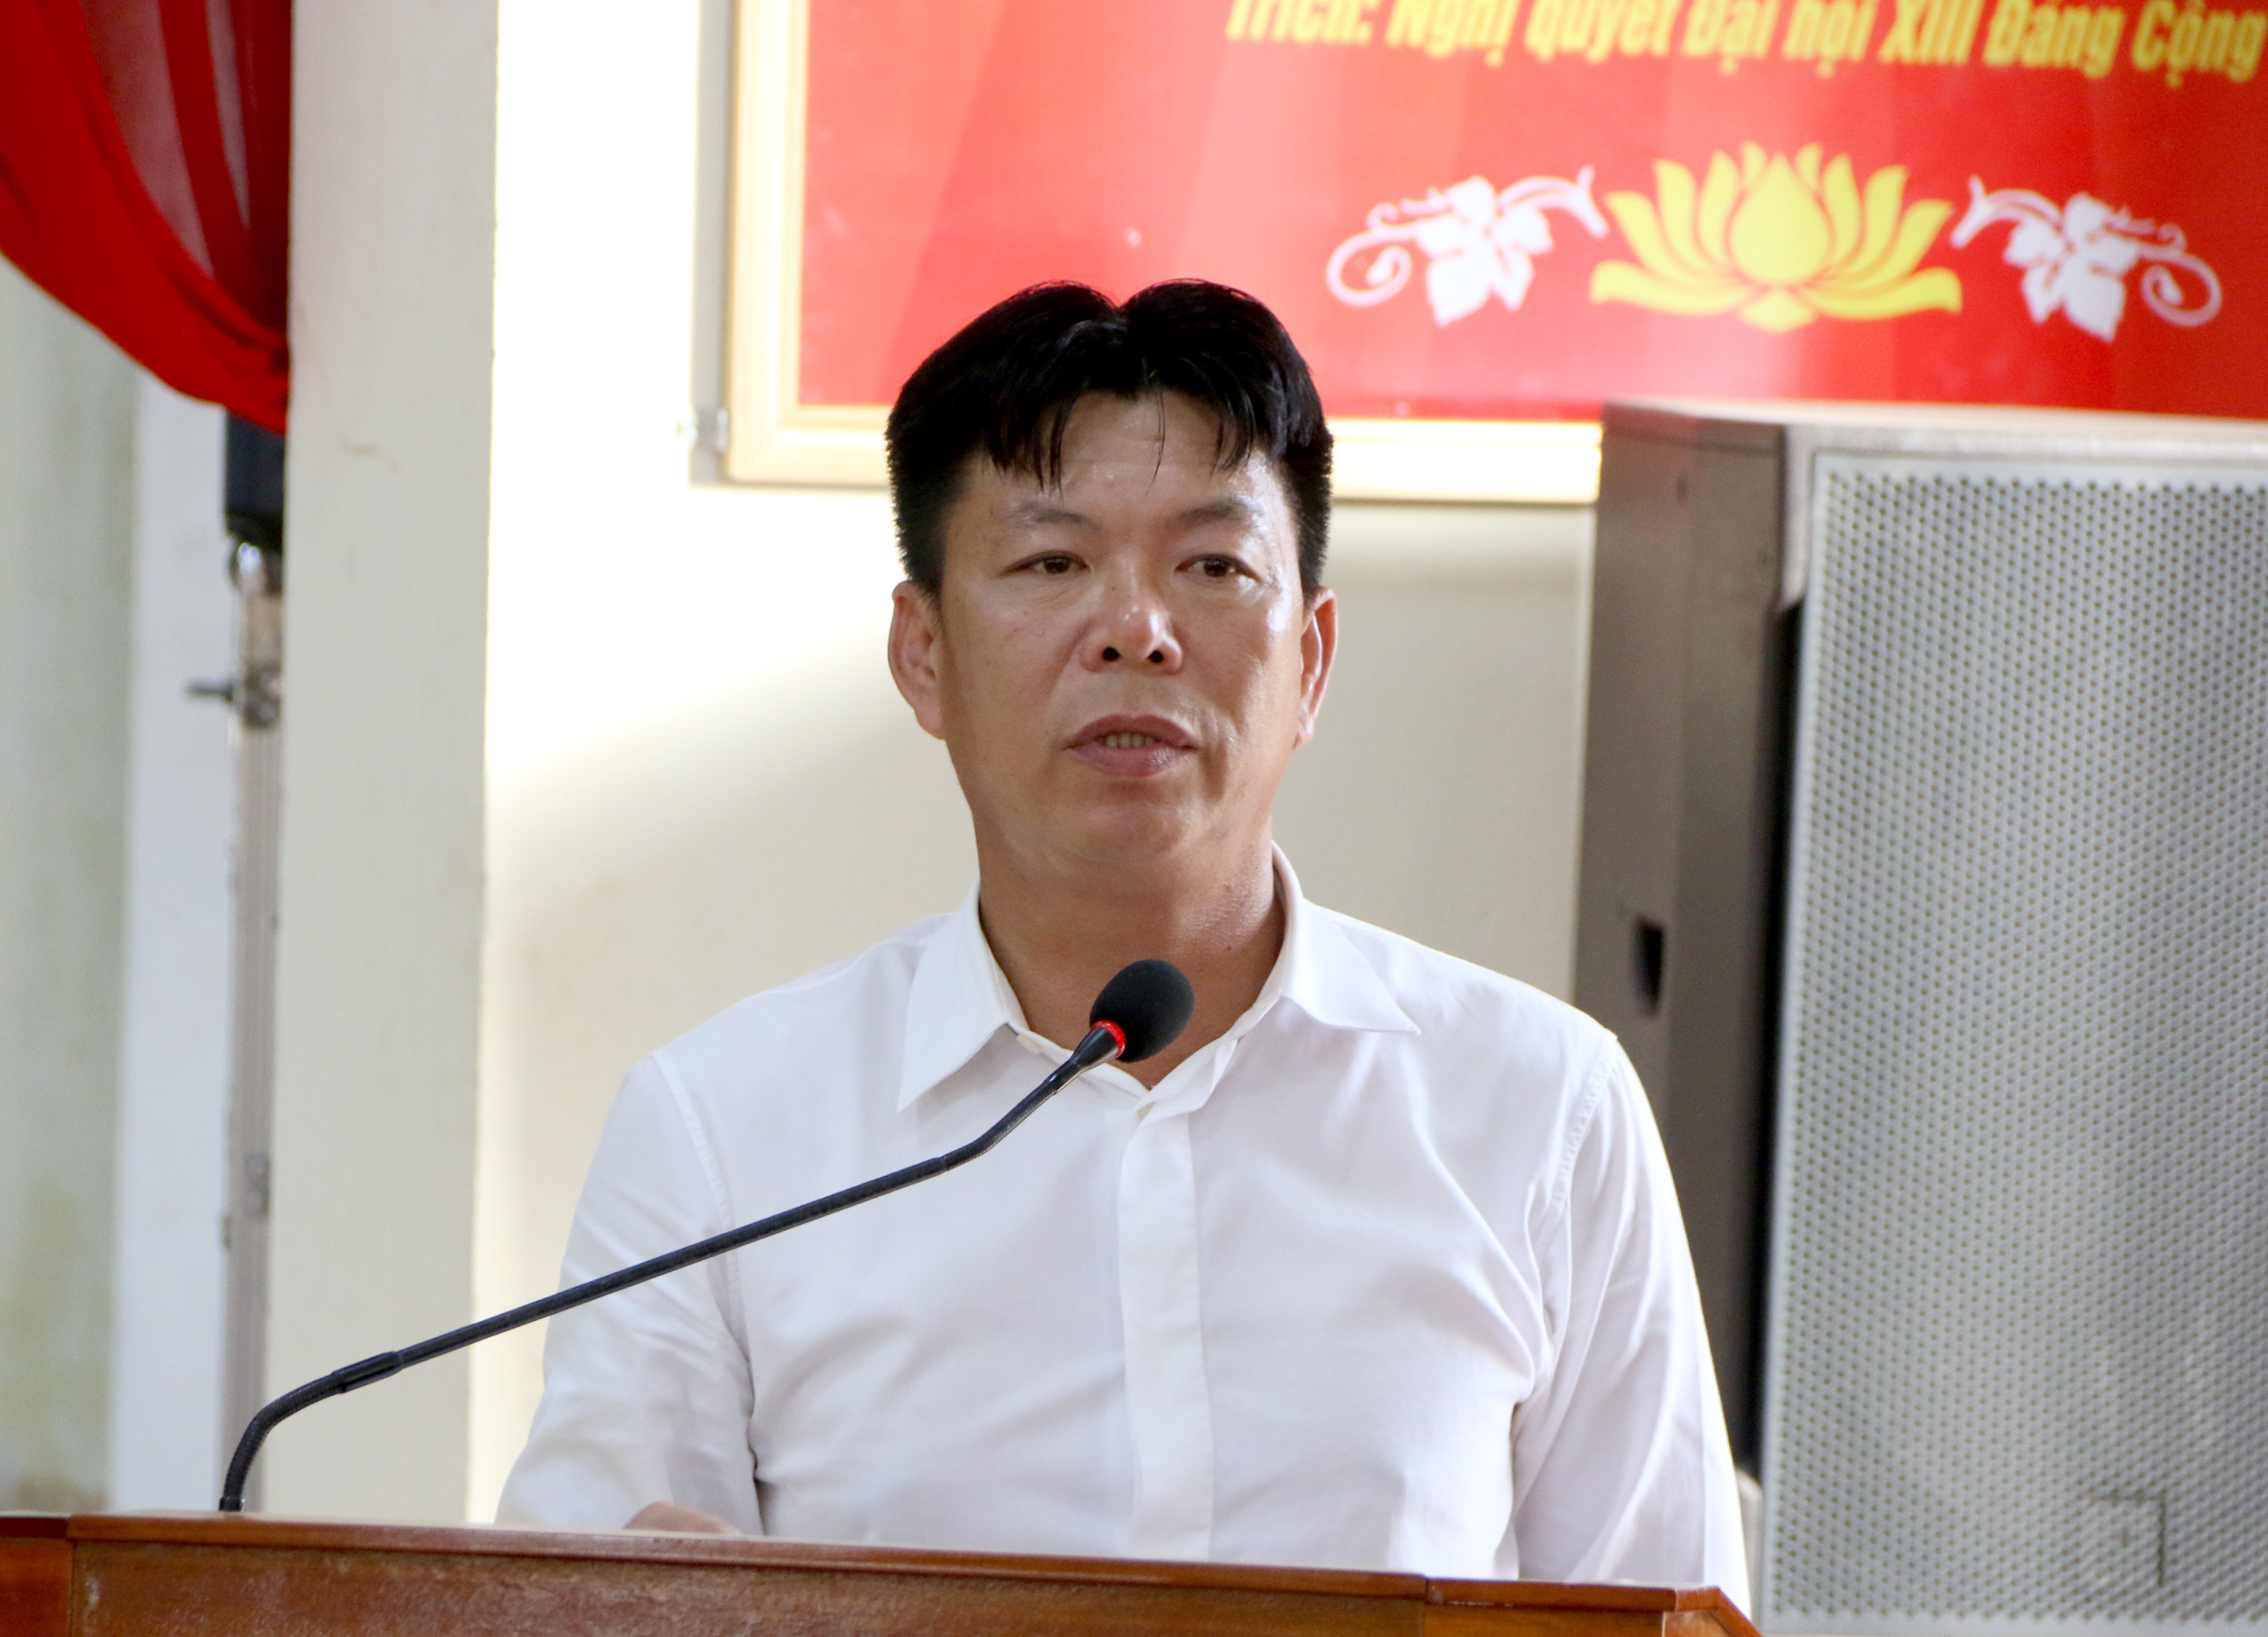 BNA_Ông Nguyễn Ngọc Oánh, Chủ tịch HĐQT Công ty cổ phần xi măng Sông Lam.JPG